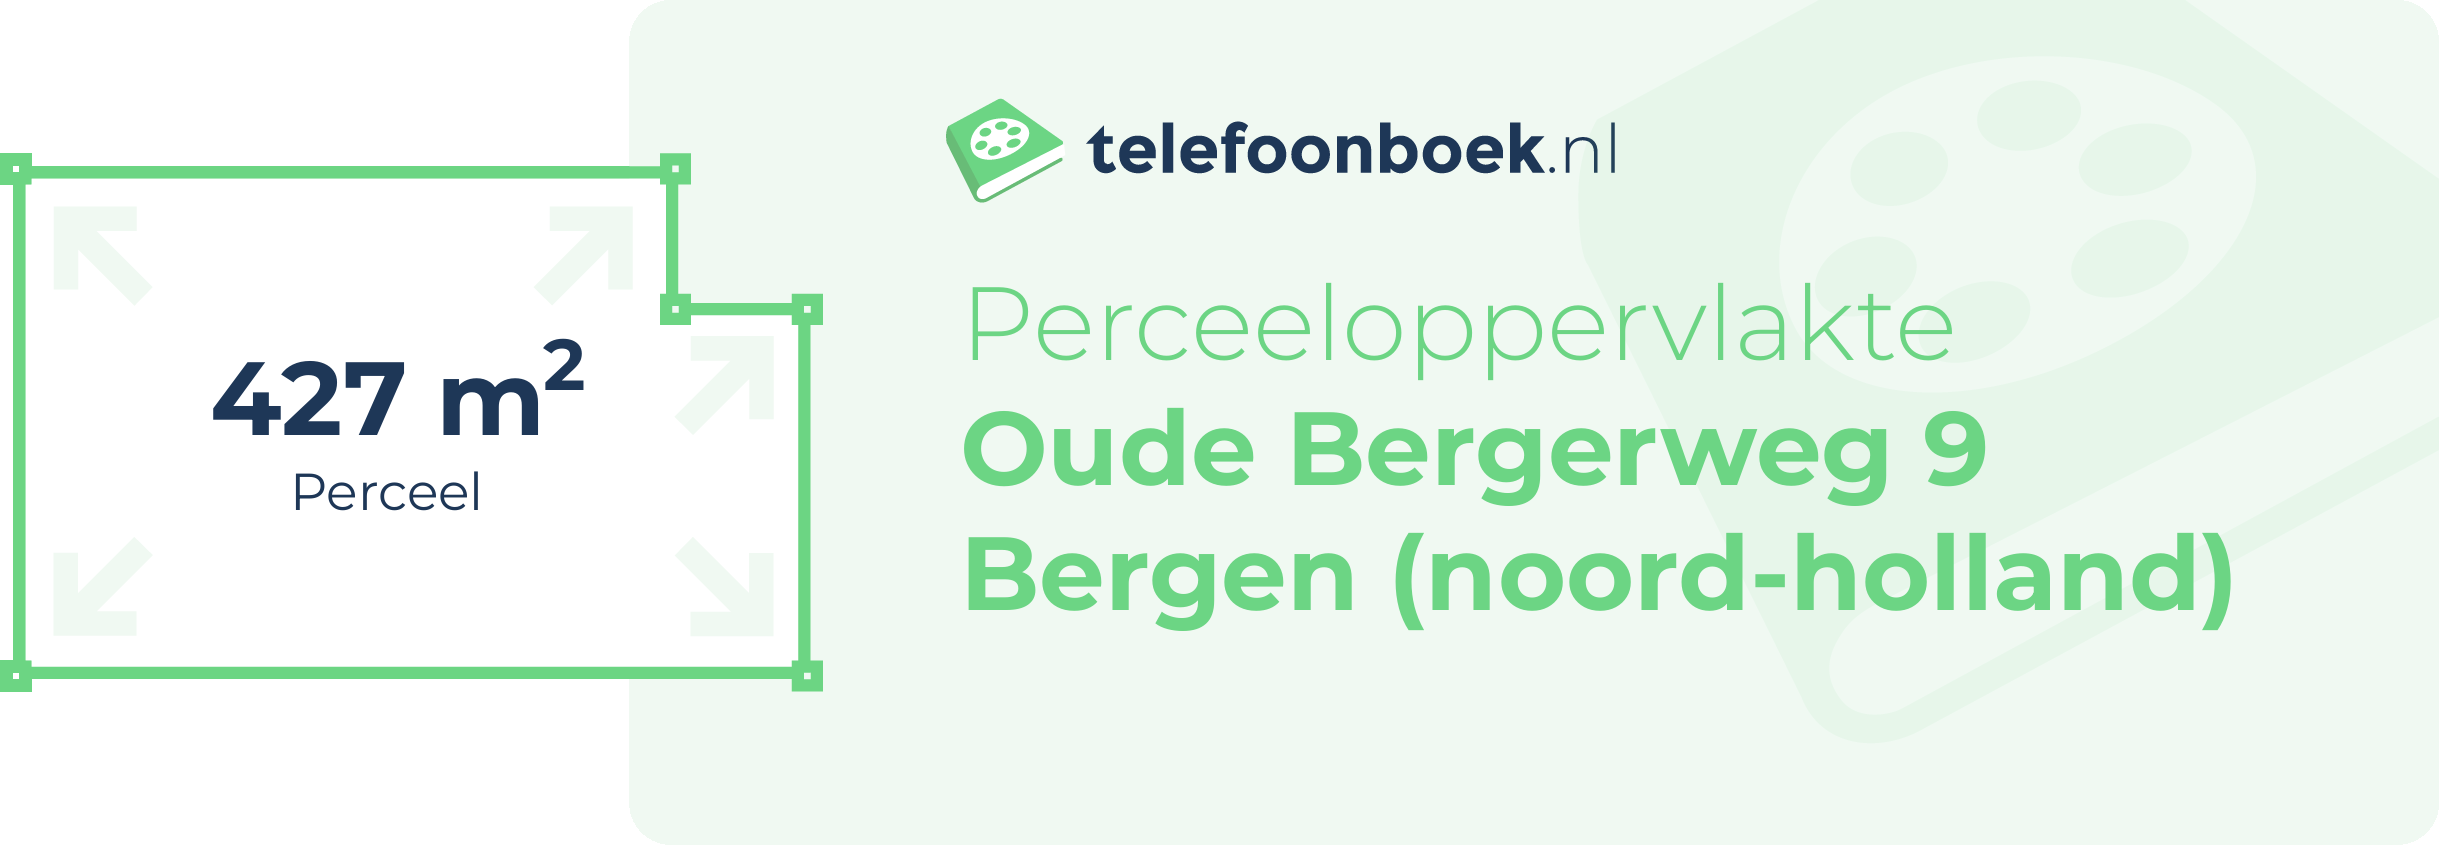 Perceeloppervlakte Oude Bergerweg 9 Bergen (Noord-Holland)